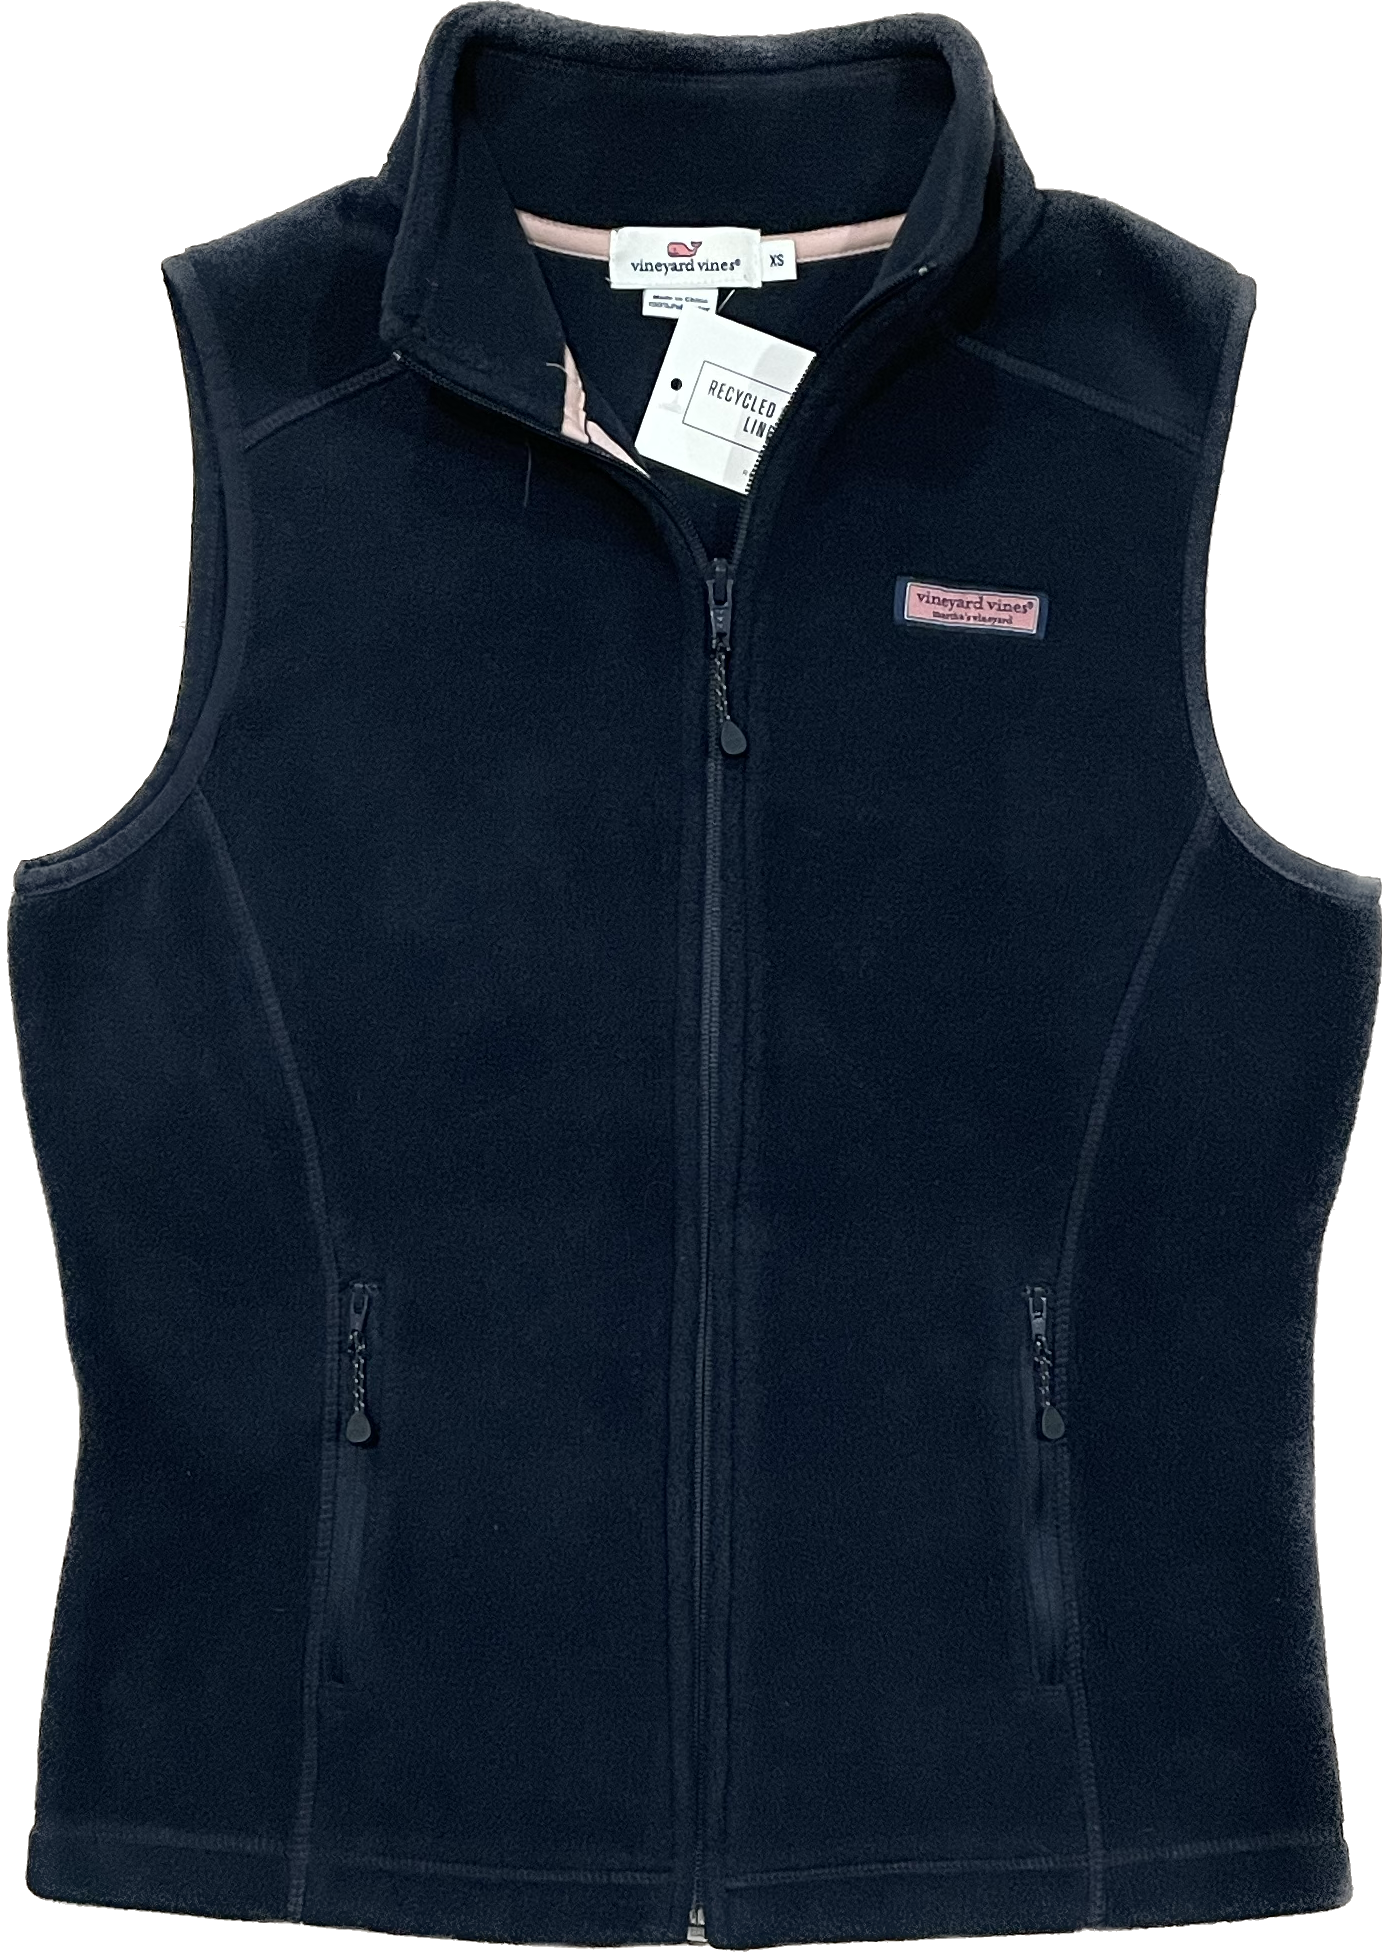 Vineyard Vines Fleece Vest, Navy Womens Size XS